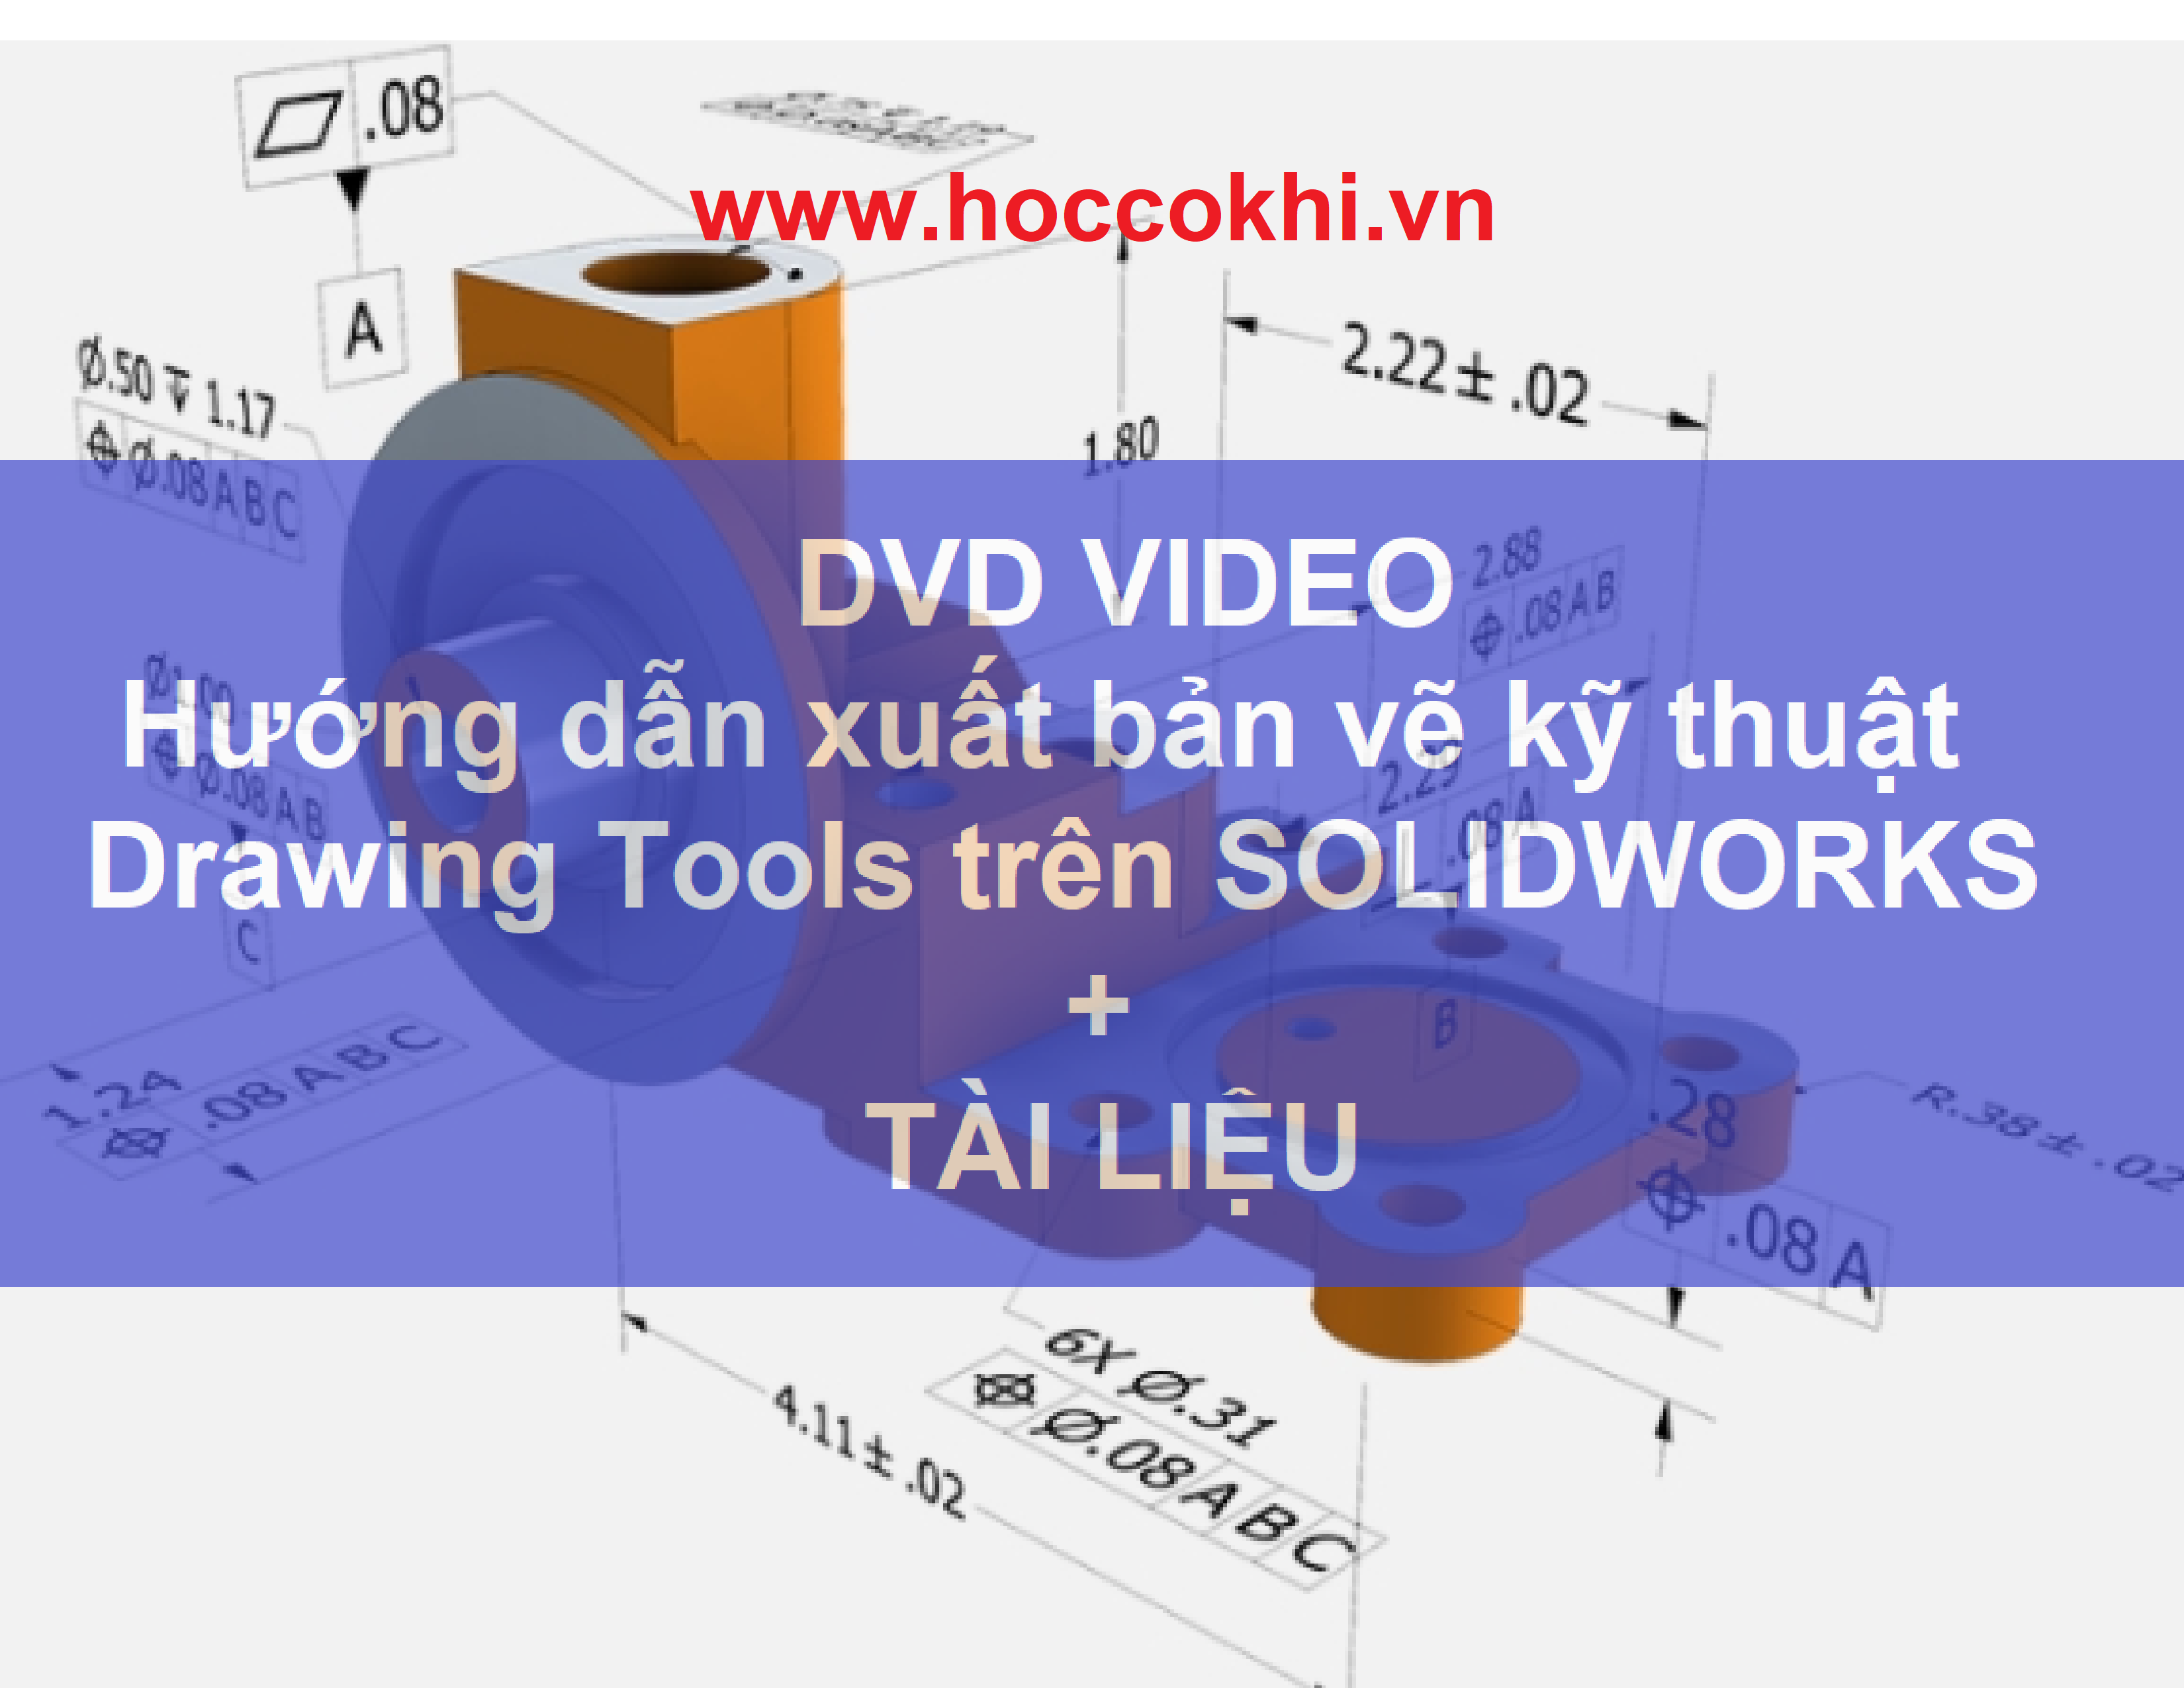 DVD hướng dẫn xuất bản vẽ kỹ thuật Drawing Tools trên Solidworks